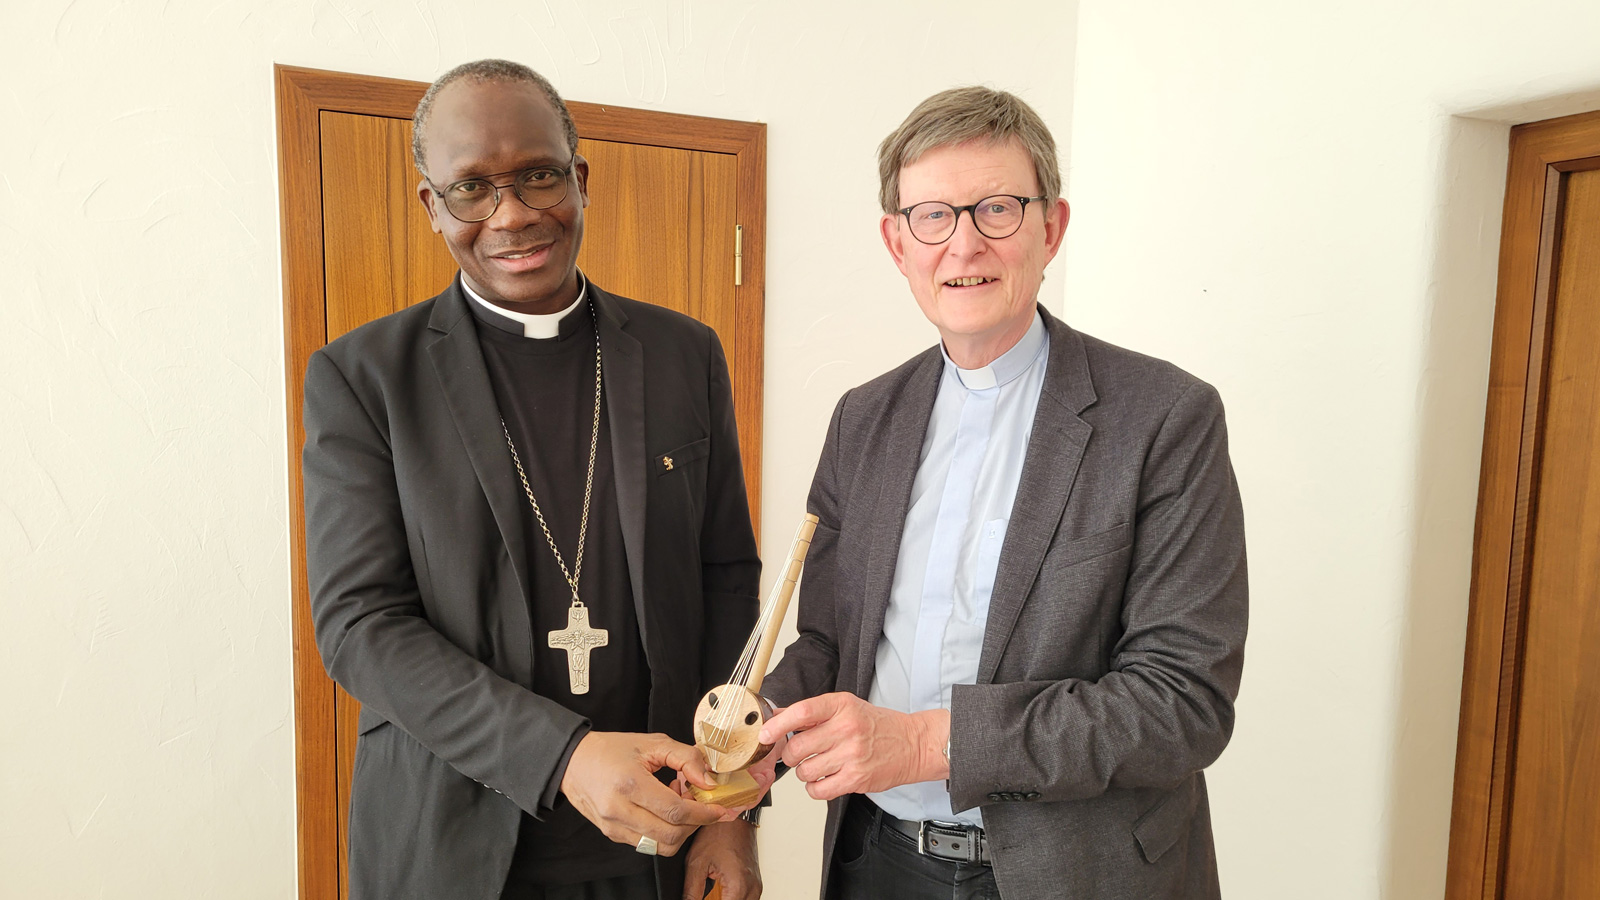 Erzbischof Roger Houngbédji OP aus Benin besucht Kardinal Woelki in Köln